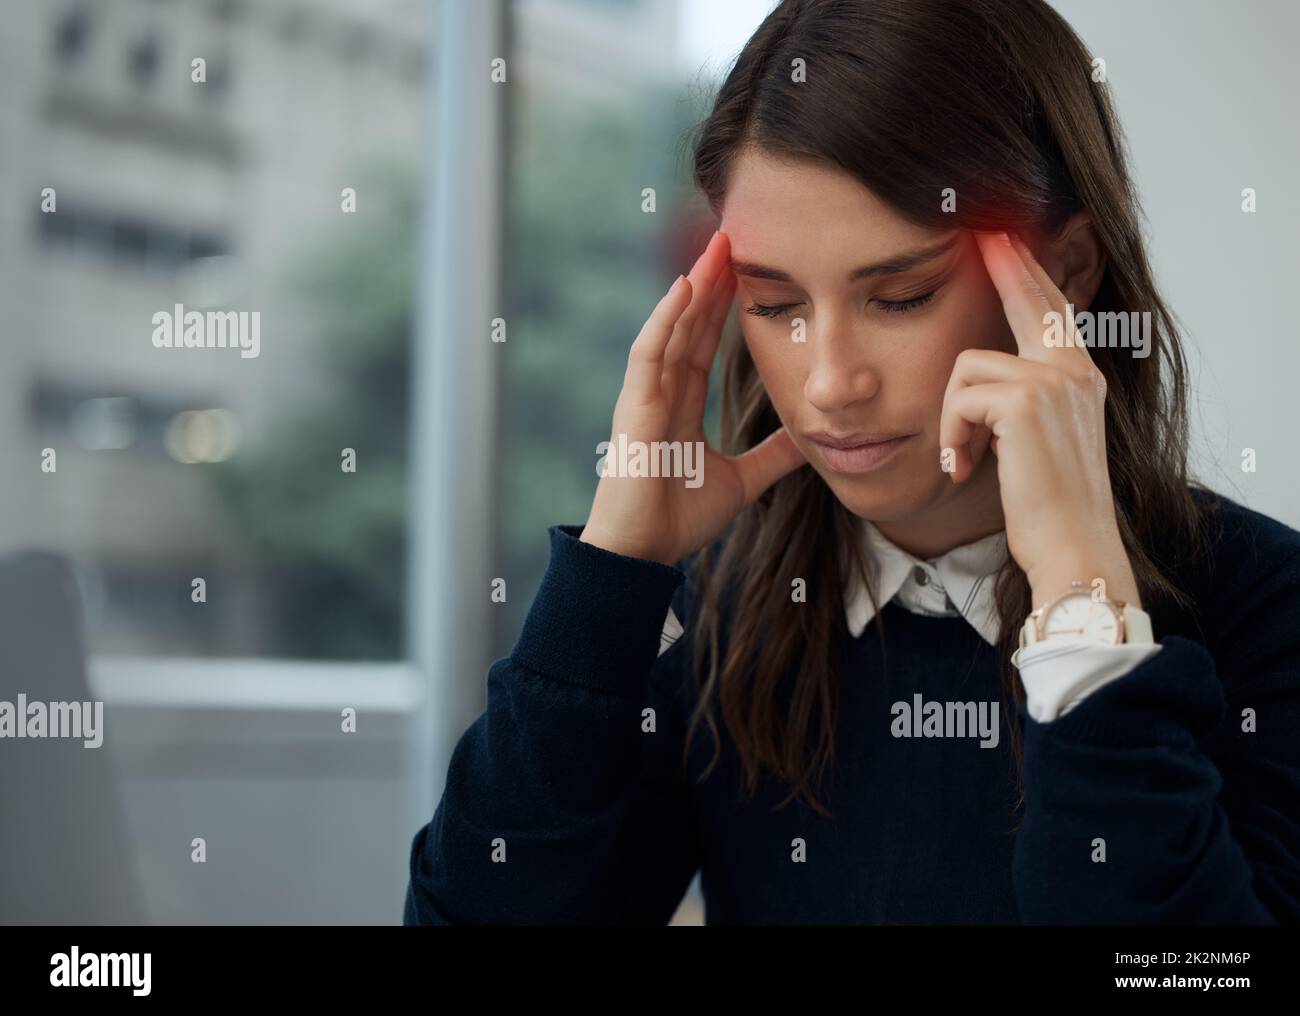 Esta migraña se siente caliente. Disparo de una joven empresaria que experimenta dolor de cabeza mientras está en el trabajo. Foto de stock